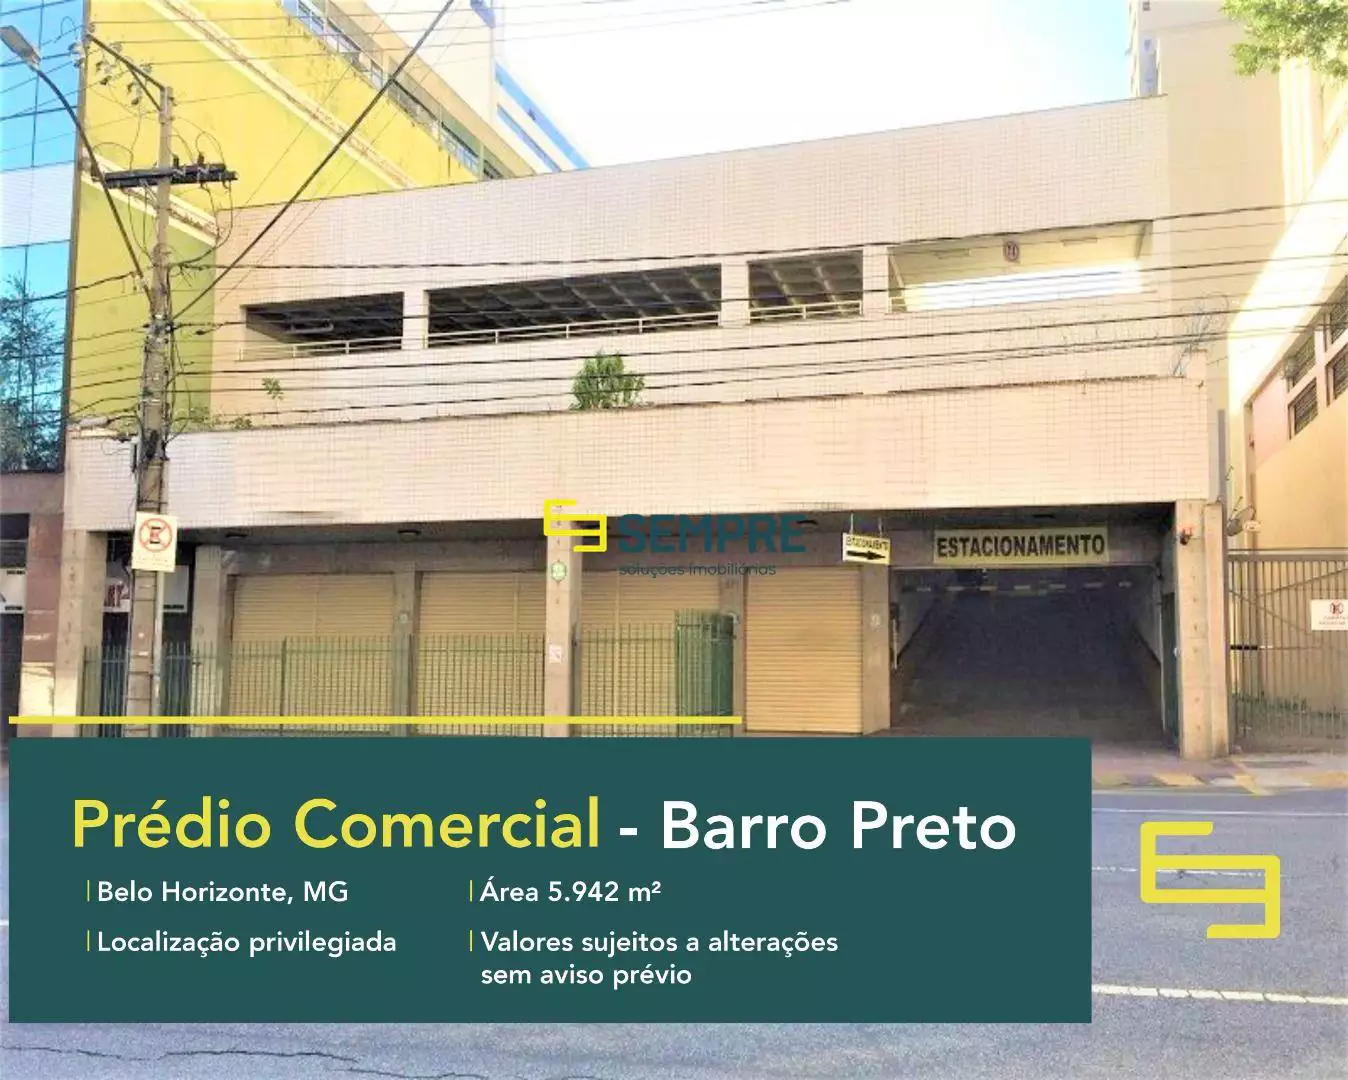 Prédio comercial à venda no Barro Preto em Belo Horizonte, em excelente localização. O estabelecimento comercial conta com área de 5.942 m².